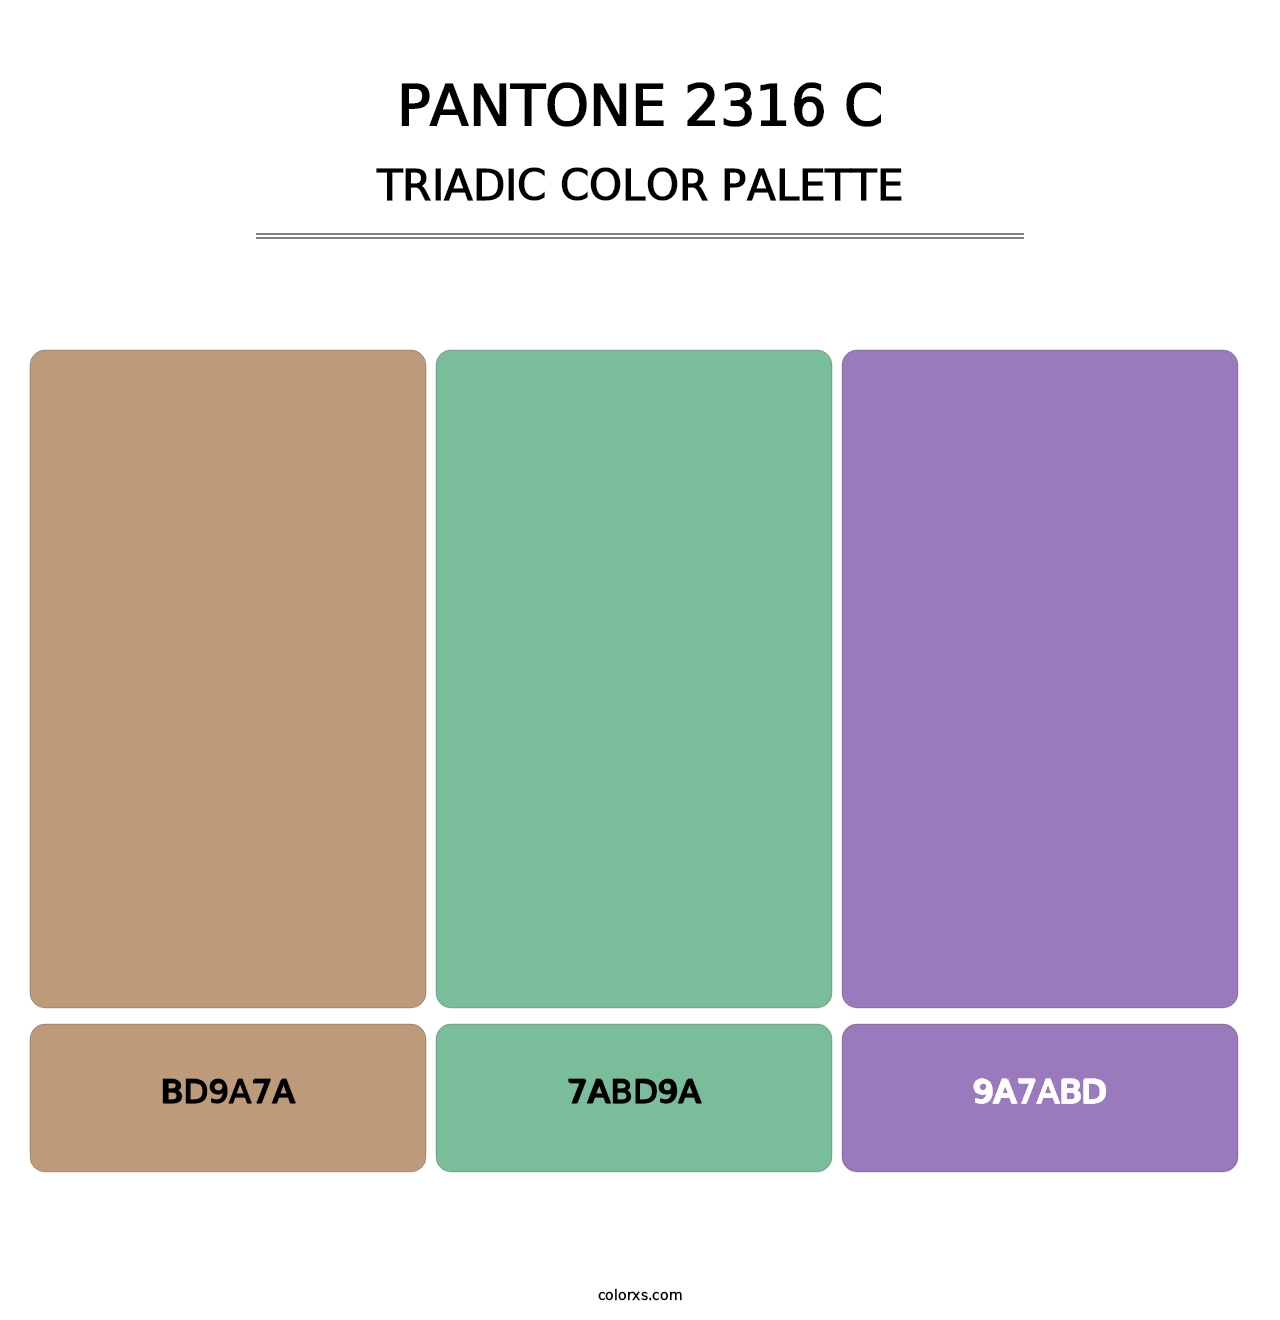 PANTONE 2316 C - Triadic Color Palette